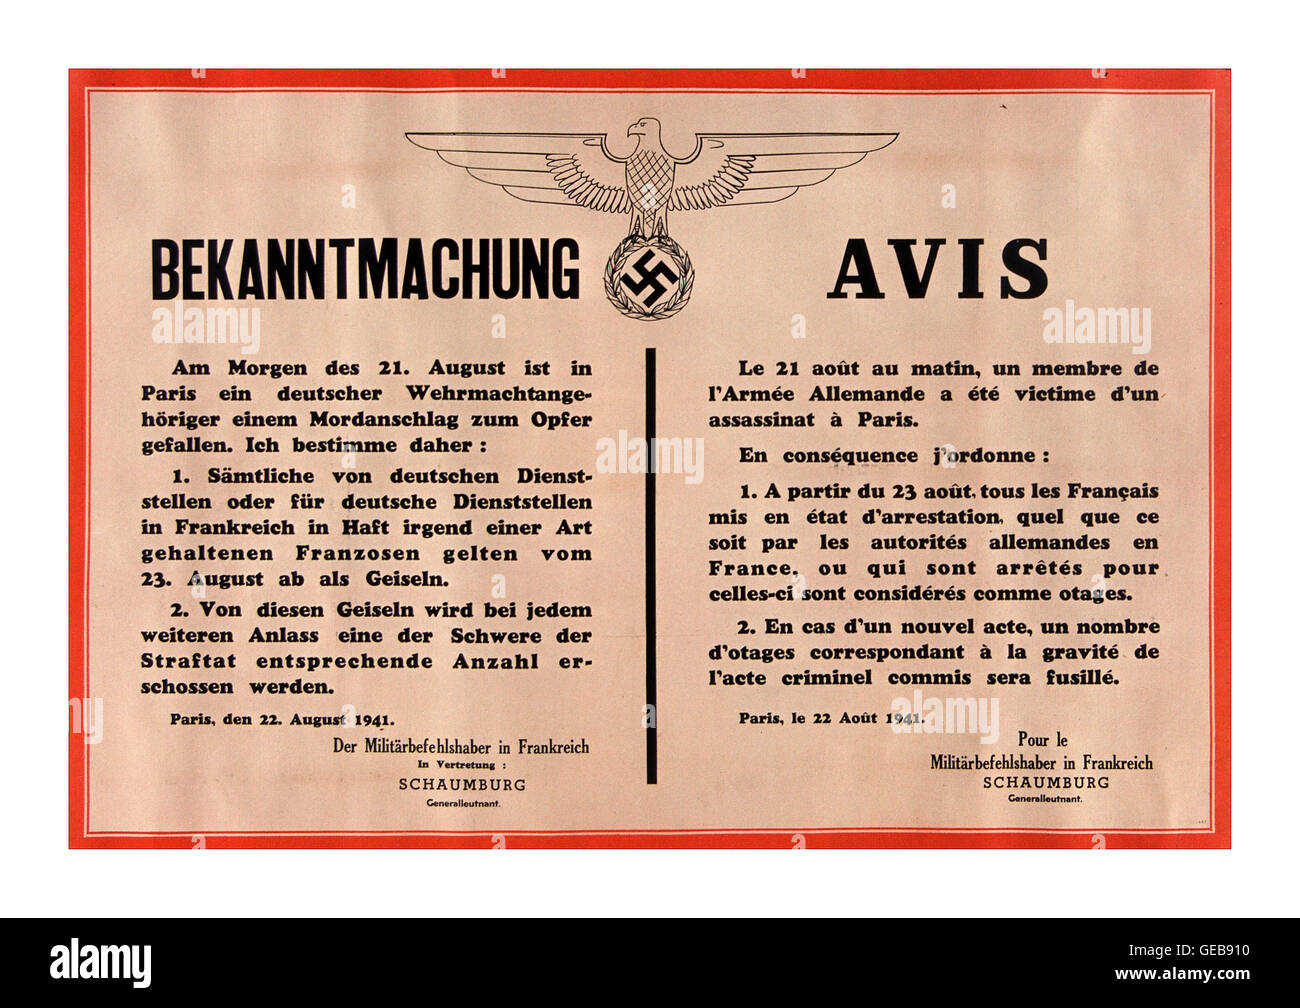 Bekanntmachung der „AVIS“-Bekanntmachung der Nazi-Partei im 2. Weltkrieg auf Französisch und Deutsch mit Todesdrohung durch Erschießen, wenn mehr tödliche Widerstandsakte gegen deutsche Nazi-Mitarbeiter stattfinden, Paris, 1941. August Stockfoto